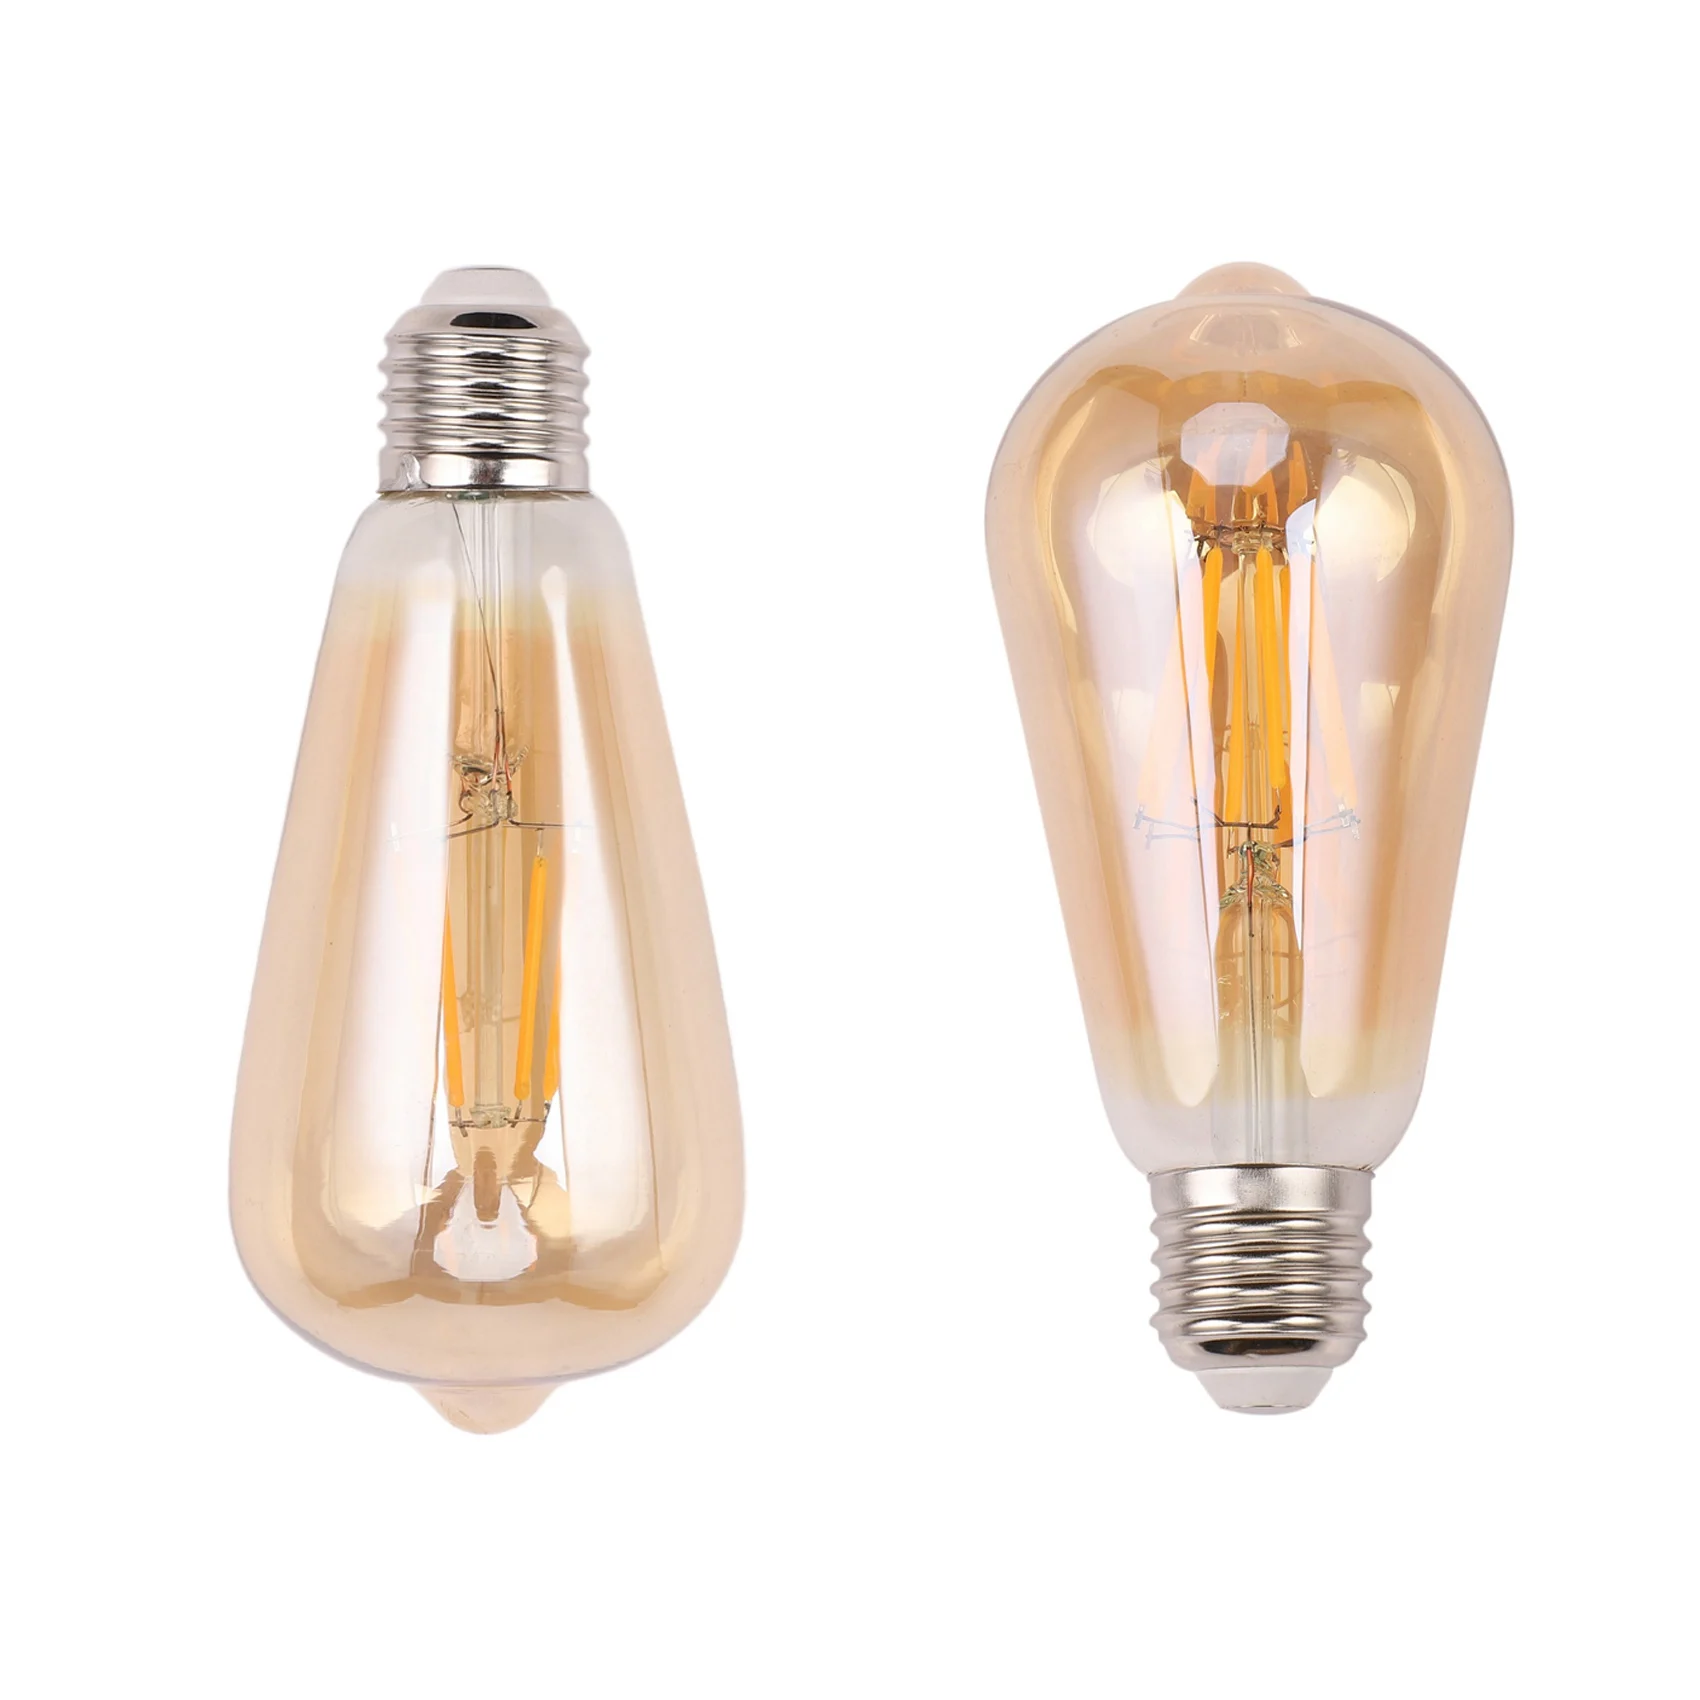 

2 Pcs Dimmable E27 Edison Retro Vintage Filament ST64 COB LED Bulb Light Lamp Voltage 220V 4W & 8W